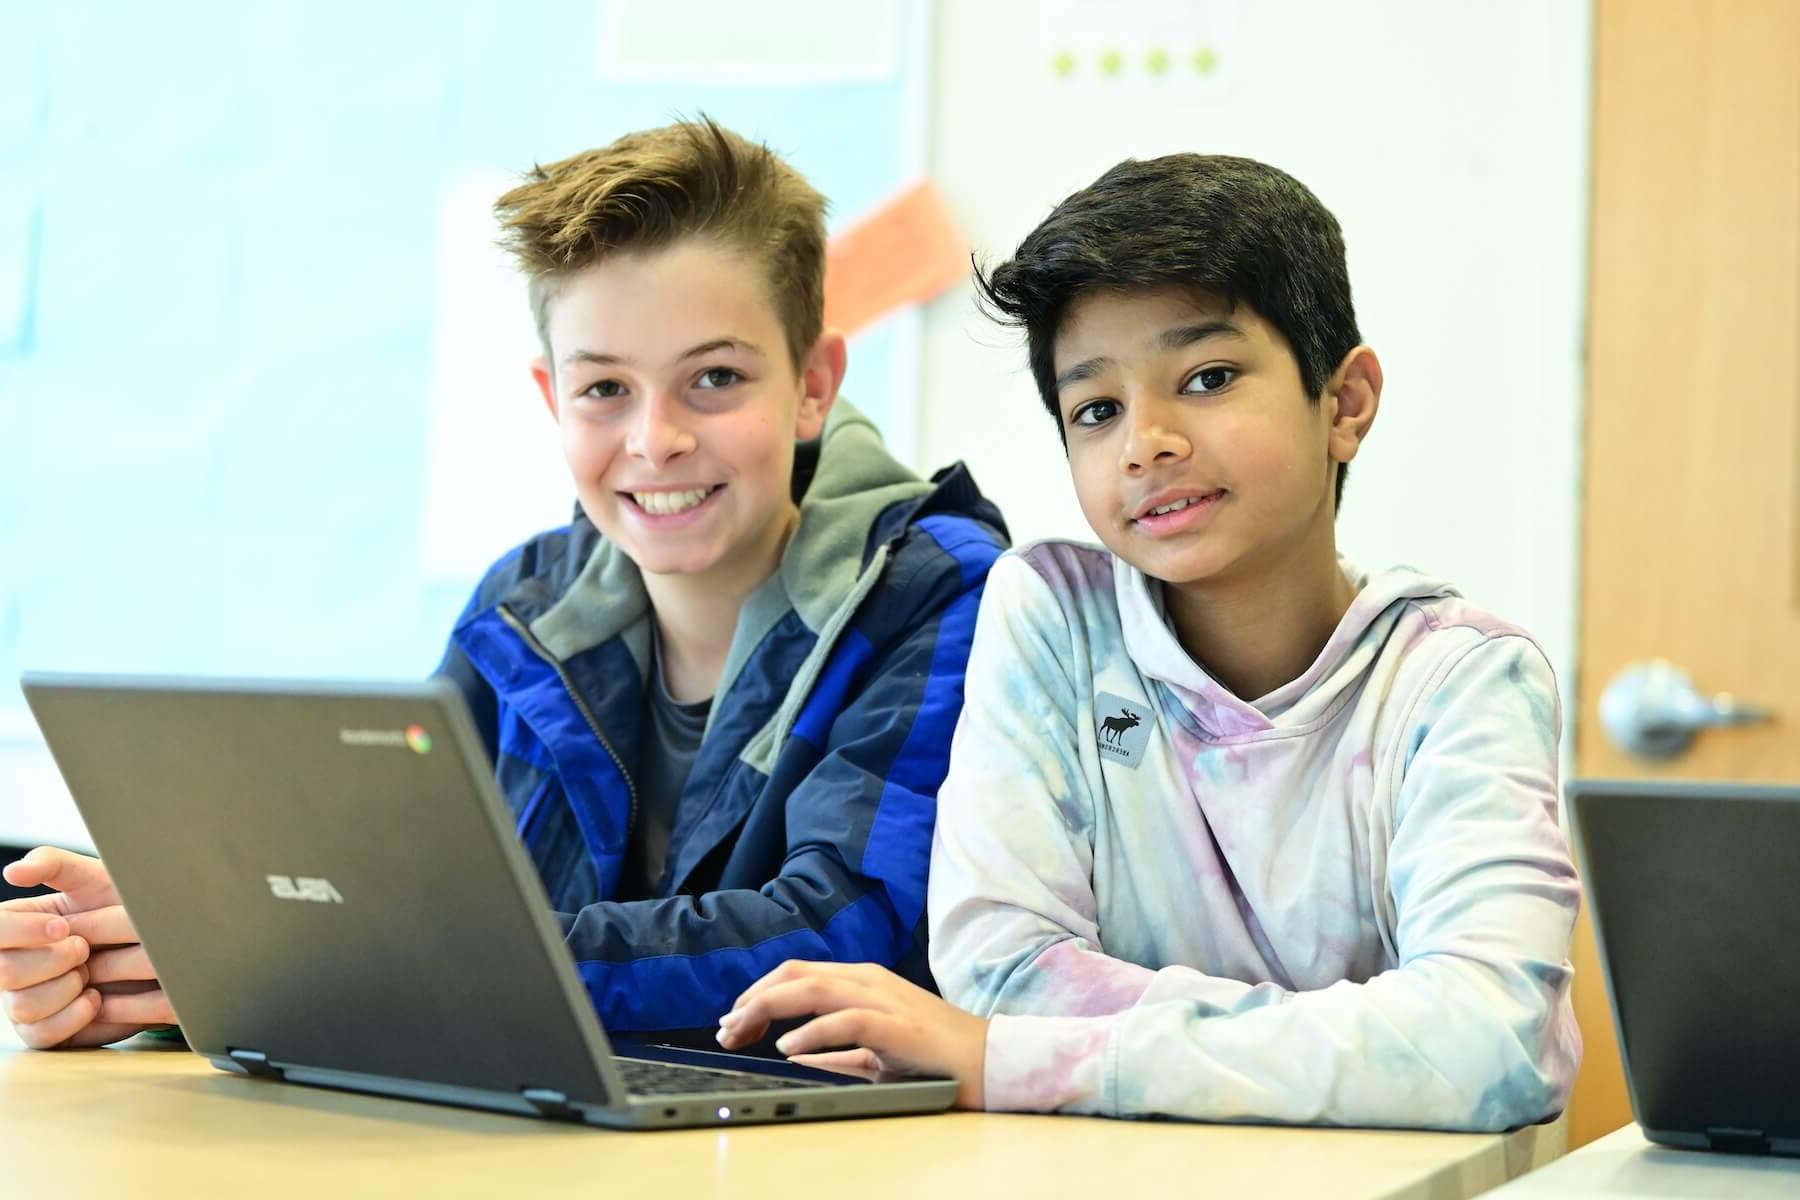 道德文化菲尔德斯顿中学的学生们一起在电脑上工作，停下来对着镜头微笑